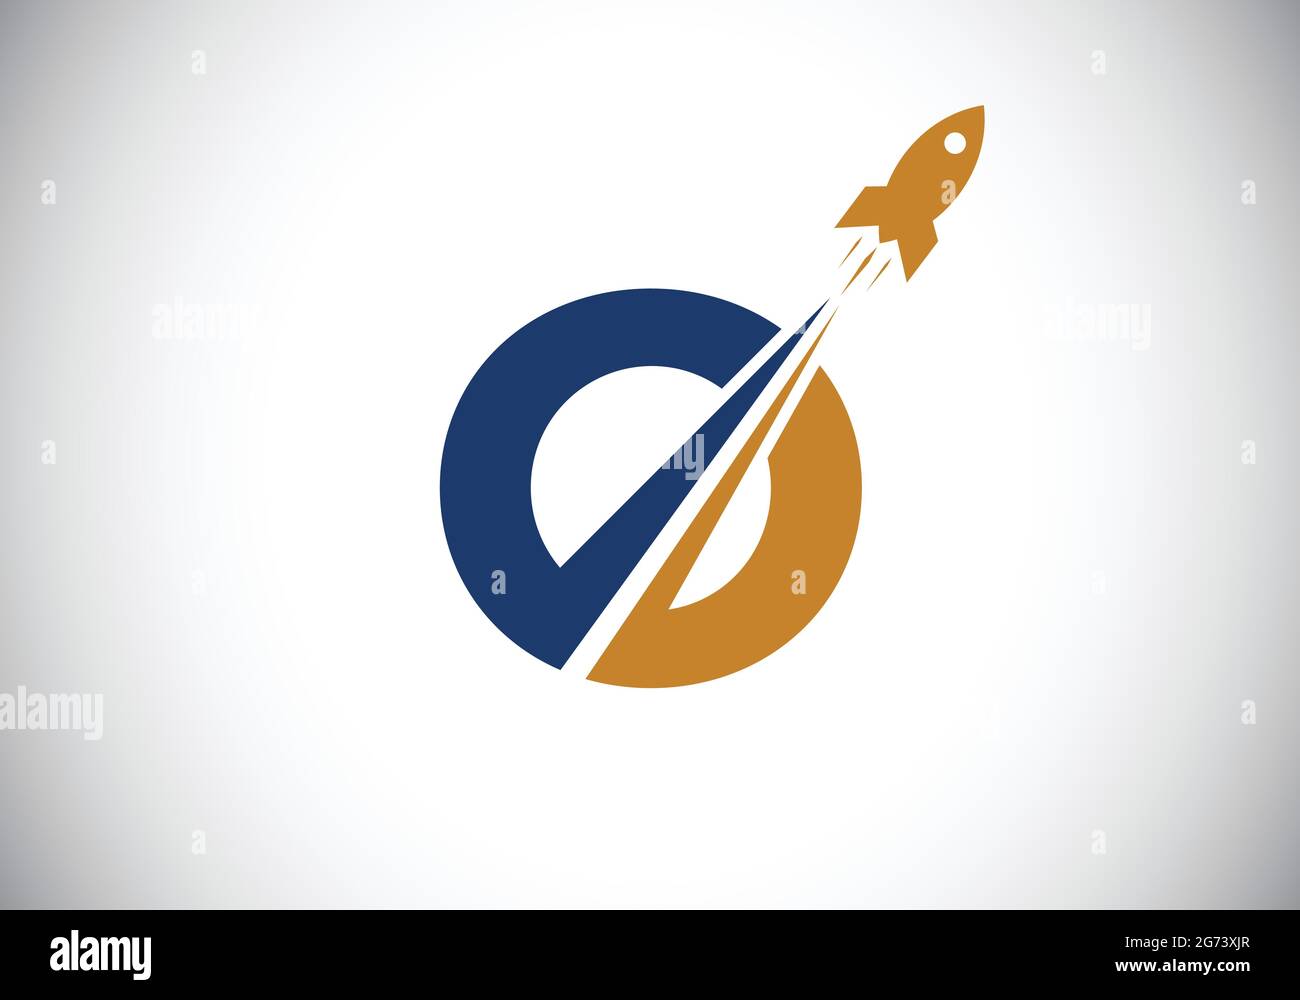 Initial O Monogramm Buchstaben Alphabet mit einem Rocket Logo Design. Raketensymbol. Schrift-Emblem. Moderner Vektor-Logotyp für Geschäfts- und Firmenidentität. Stock Vektor